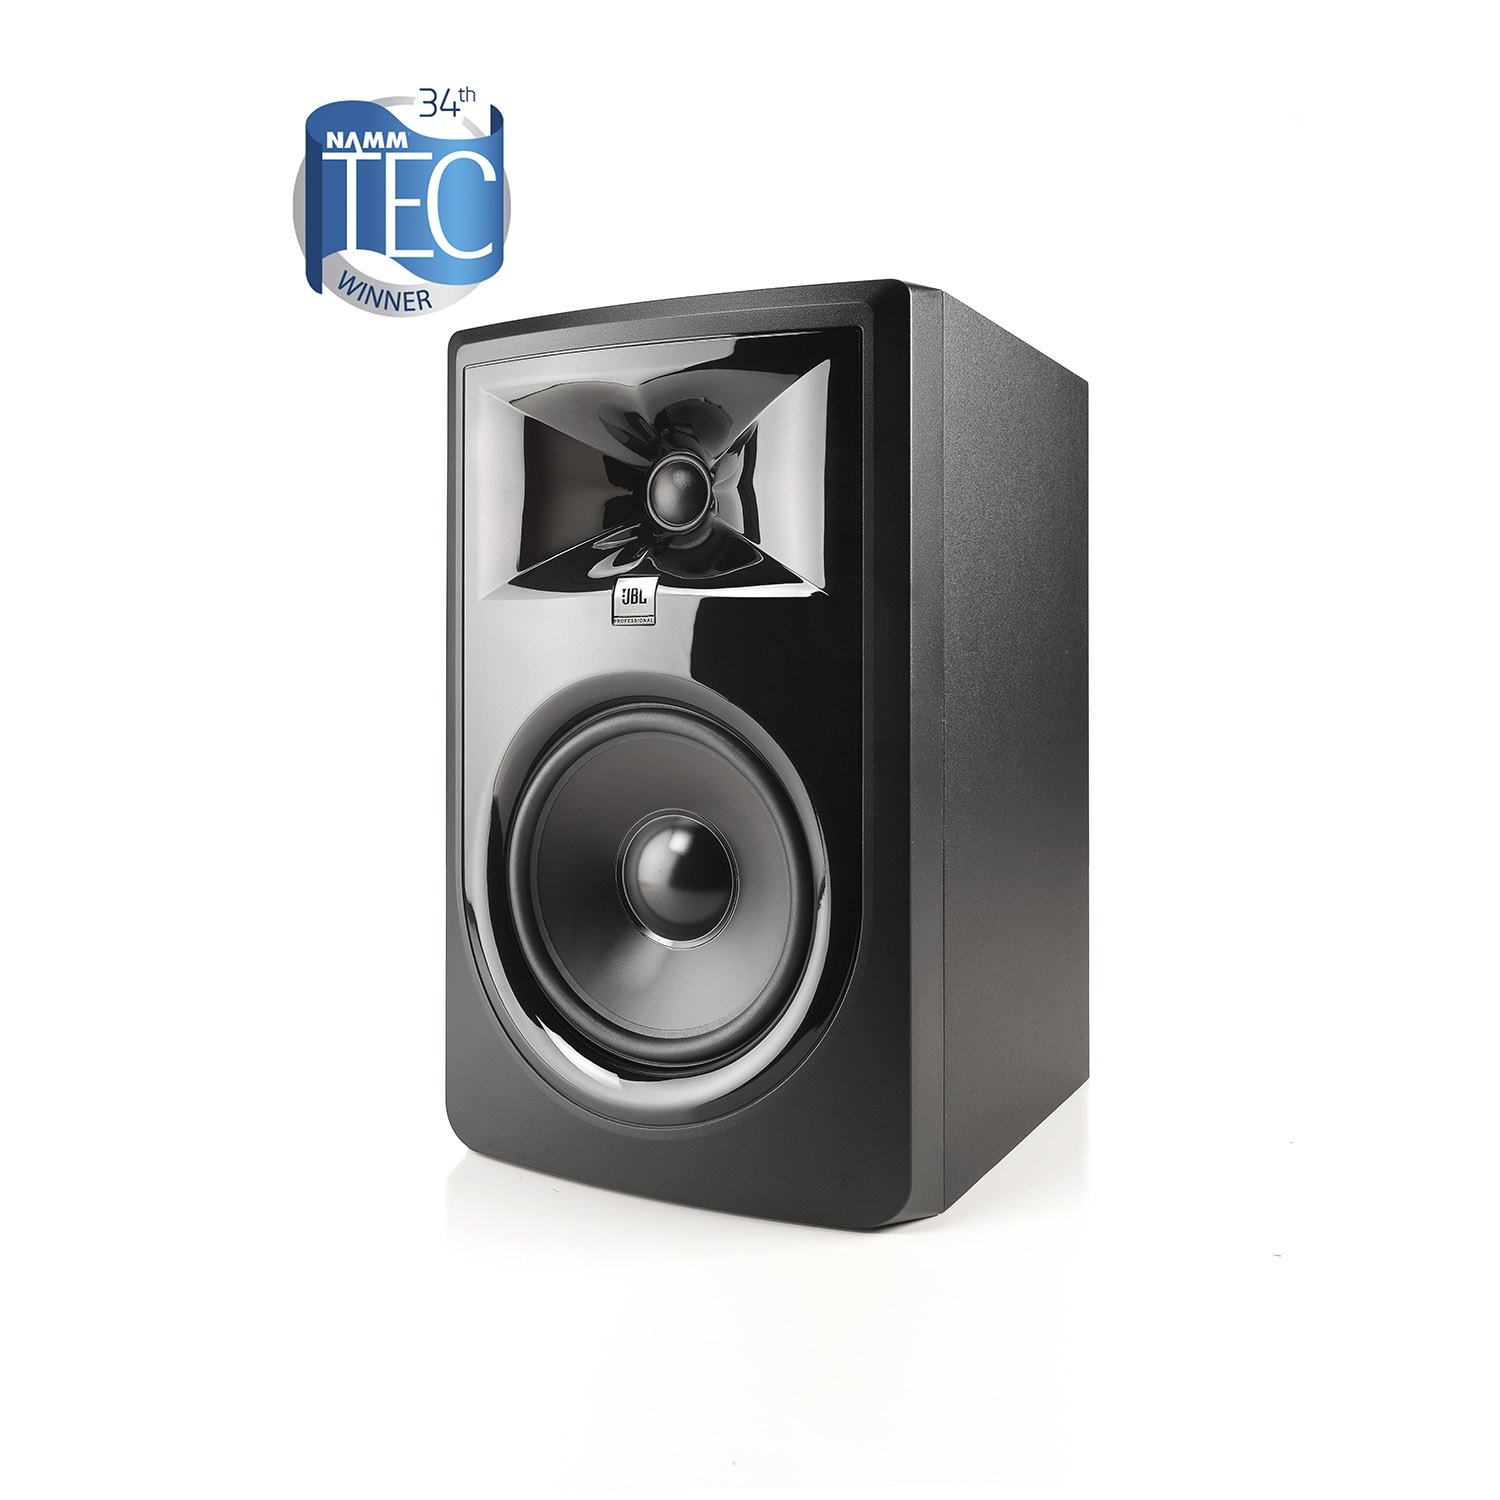 Examinar detenidamente fantasma encima Monitores de estudio JBL 3 Series MkII al mejor precio - Audioluces.com